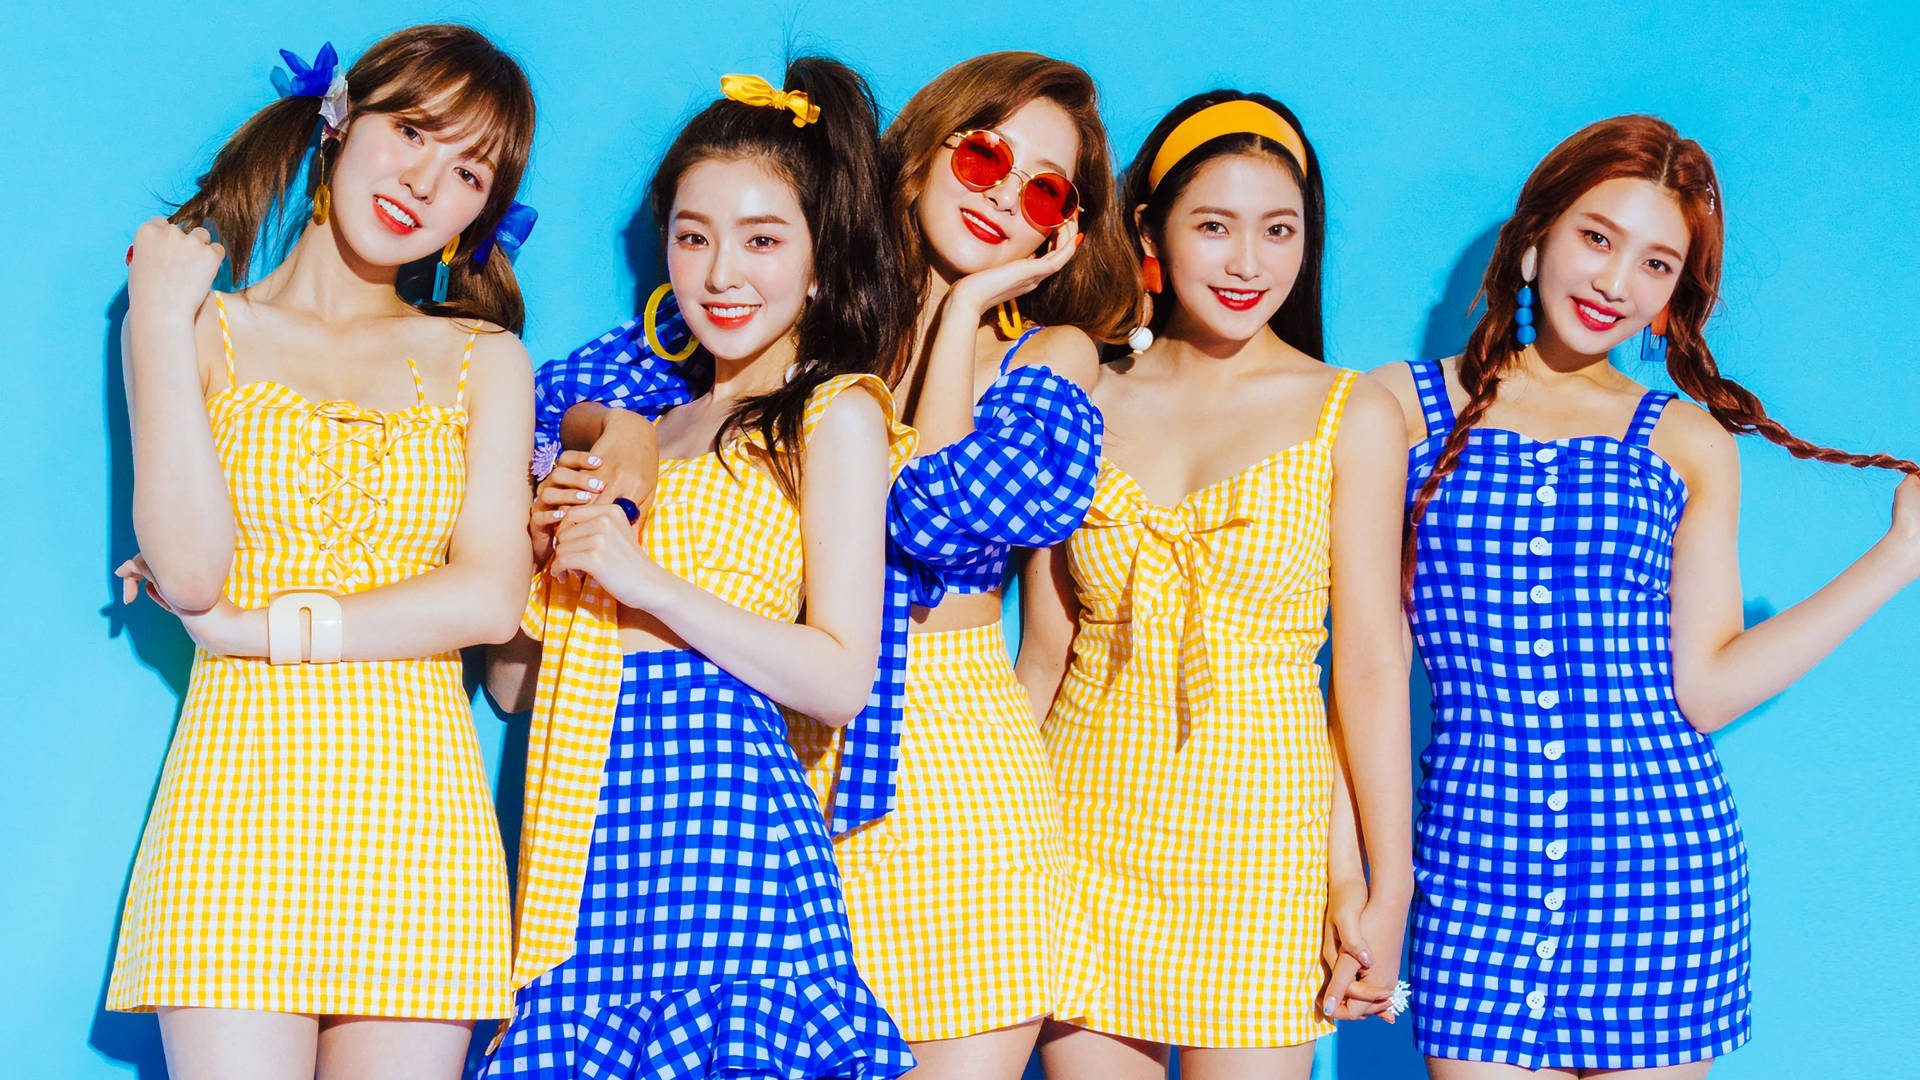 Red Velvet Checkered Photoshoot Background